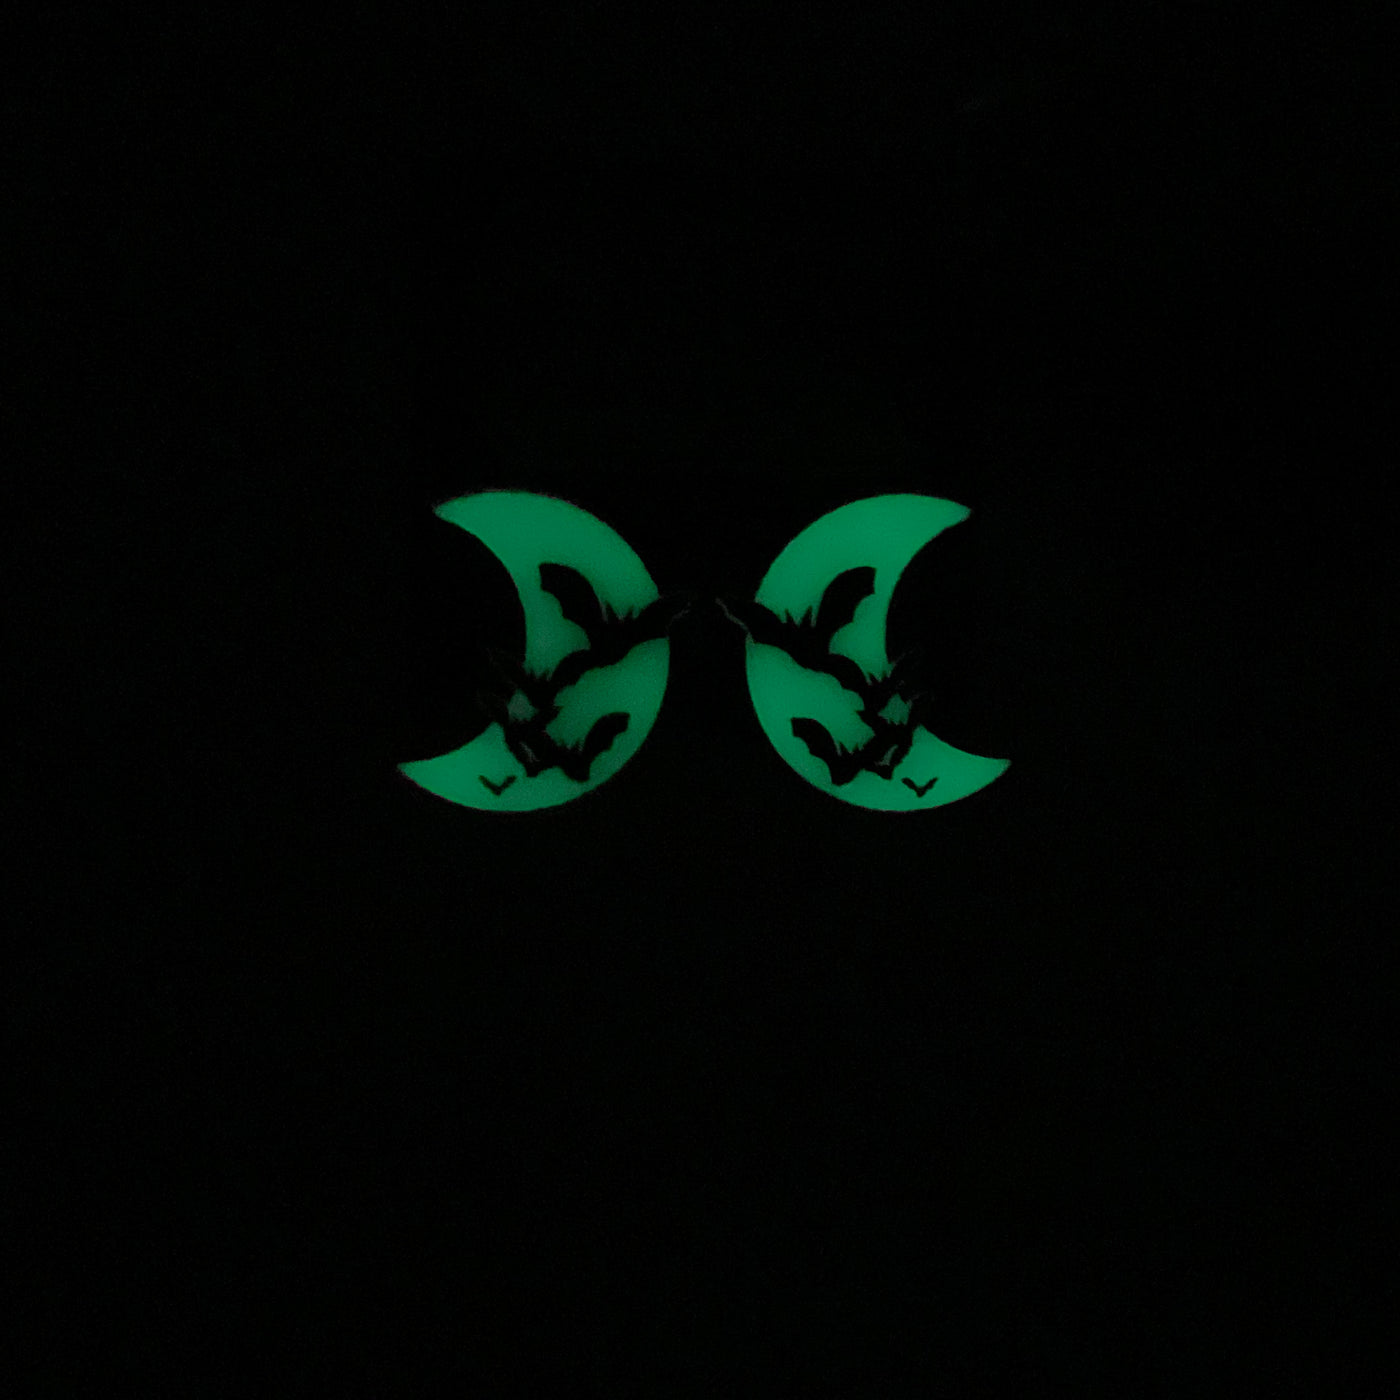 Bat's Amore - Small Bat/Moon Earrings (GLOWS!)